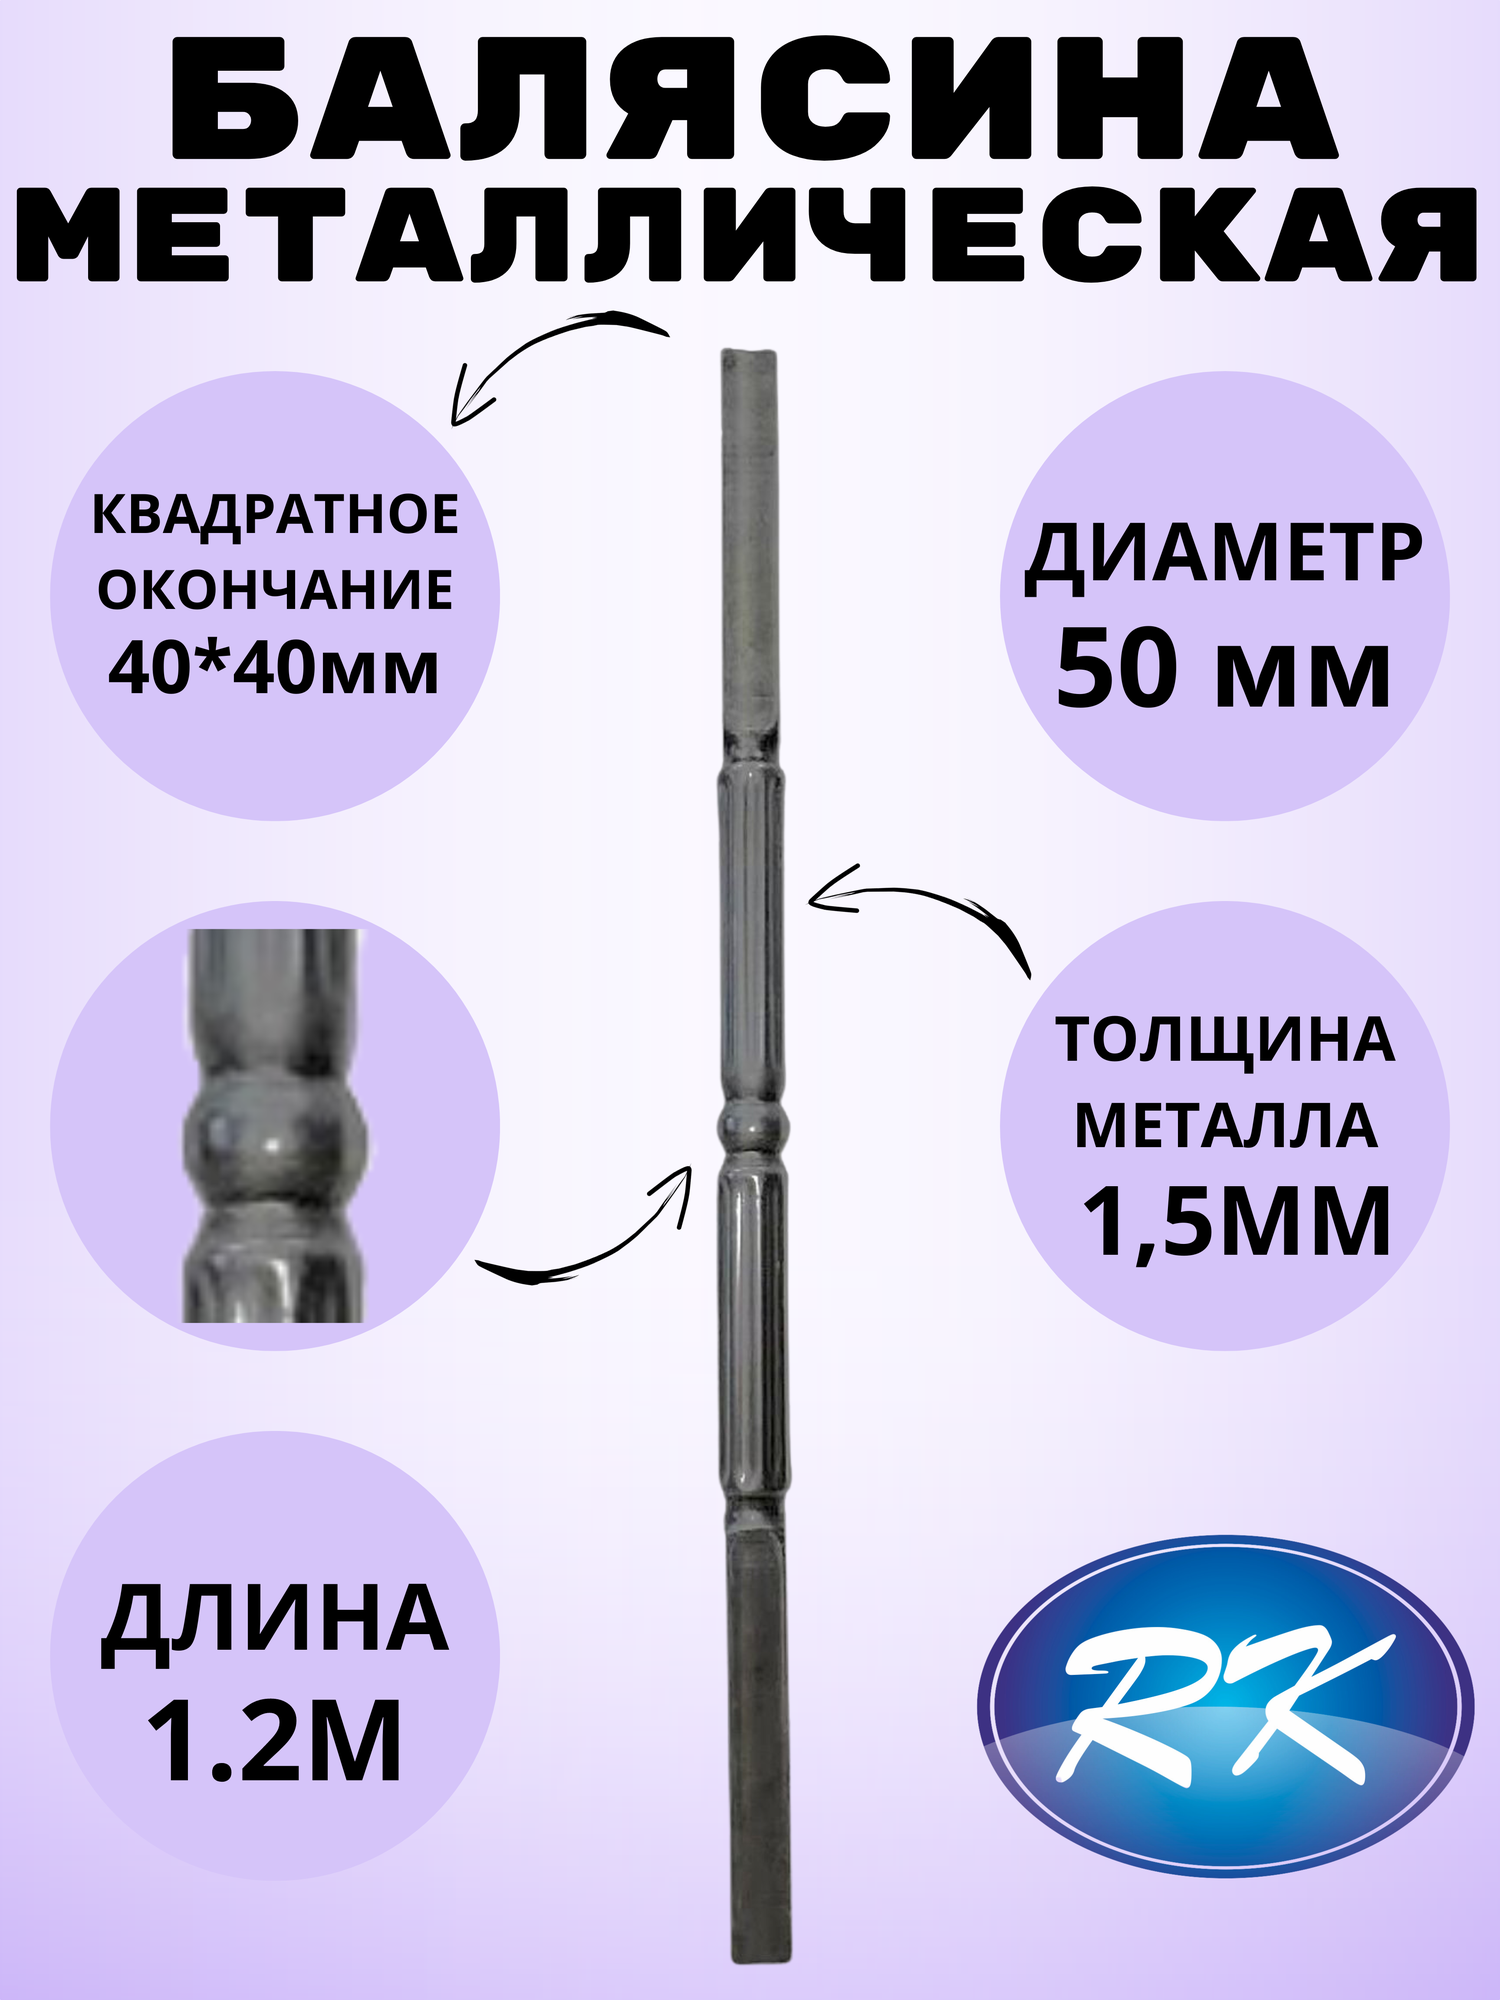 Балясина кованая металлическая Royal Kovka, диаметр 50 мм, квадратные окончания 40х40 мм, арт. 40*40.3 КА. КВ-1.2м